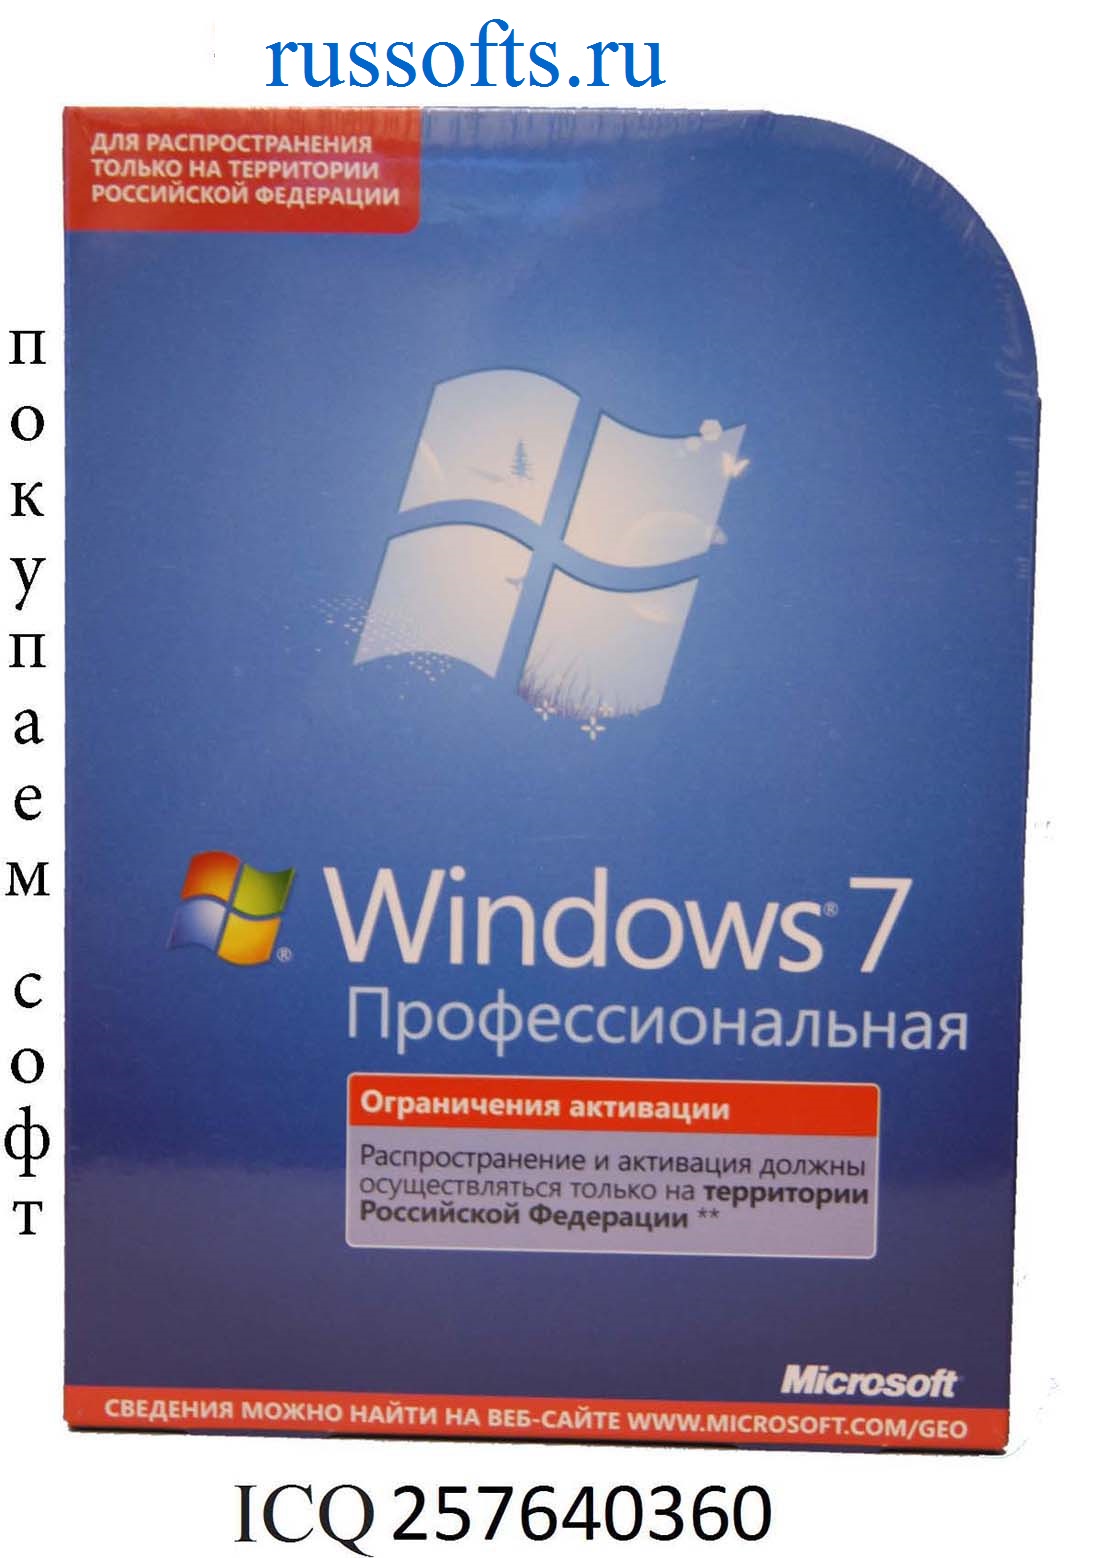 Покупаем лицензионное ПО от Майкрософт в городе Москва, фото 3, телефон продавца: +7 (963) 645-62-73